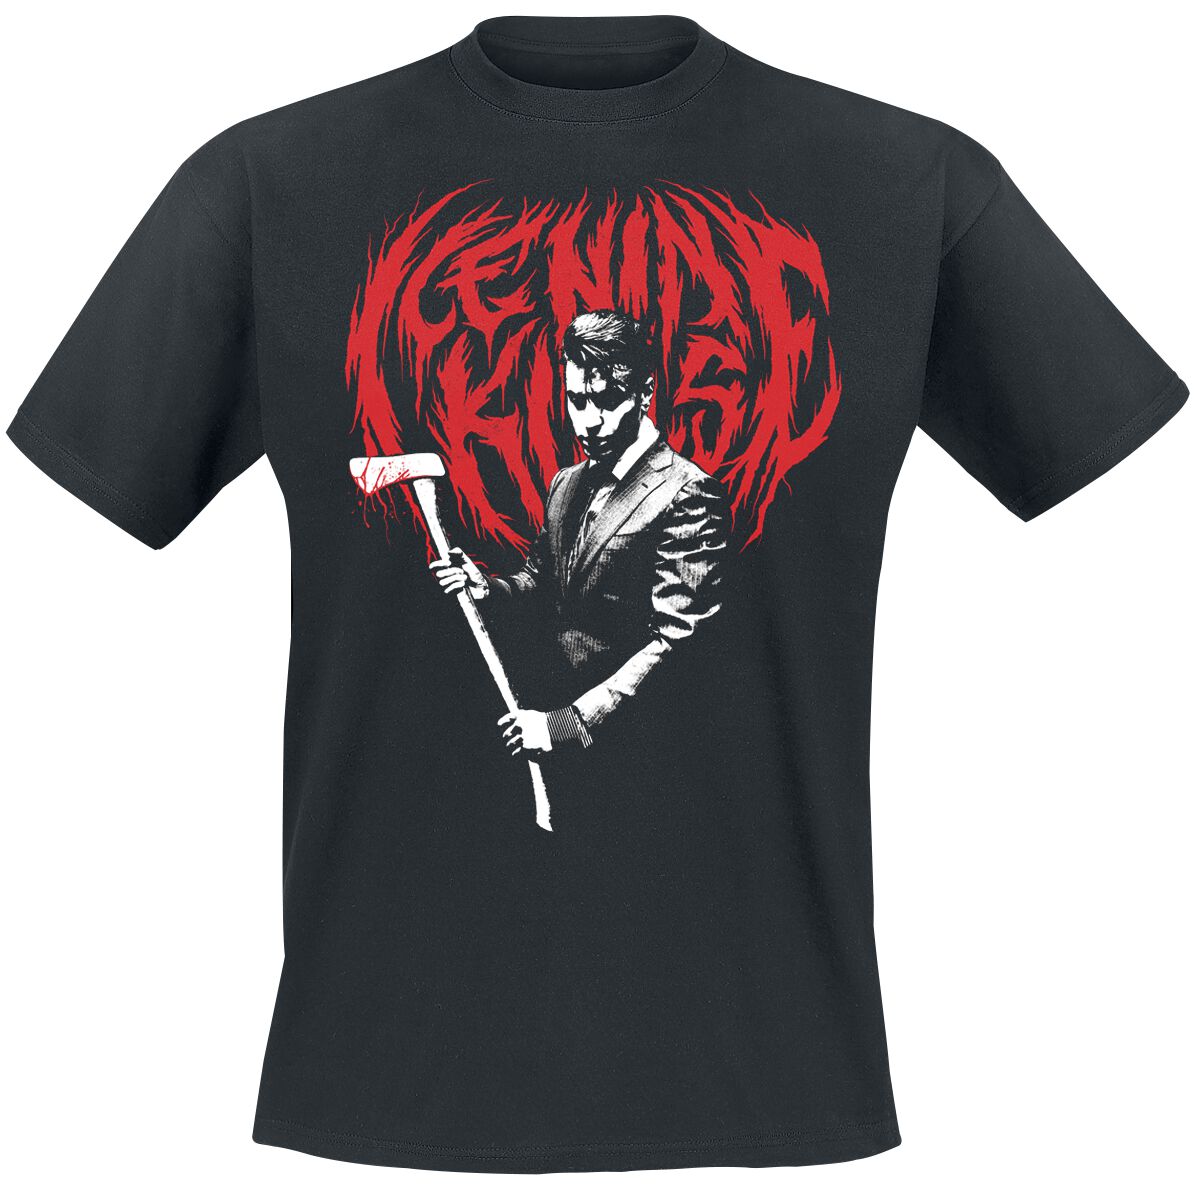 Ice Nine Kills T-Shirt - Hey Paul - S bis 4XL - für Männer - Größe 3XL - schwarz  - Lizenziertes Merchandise!